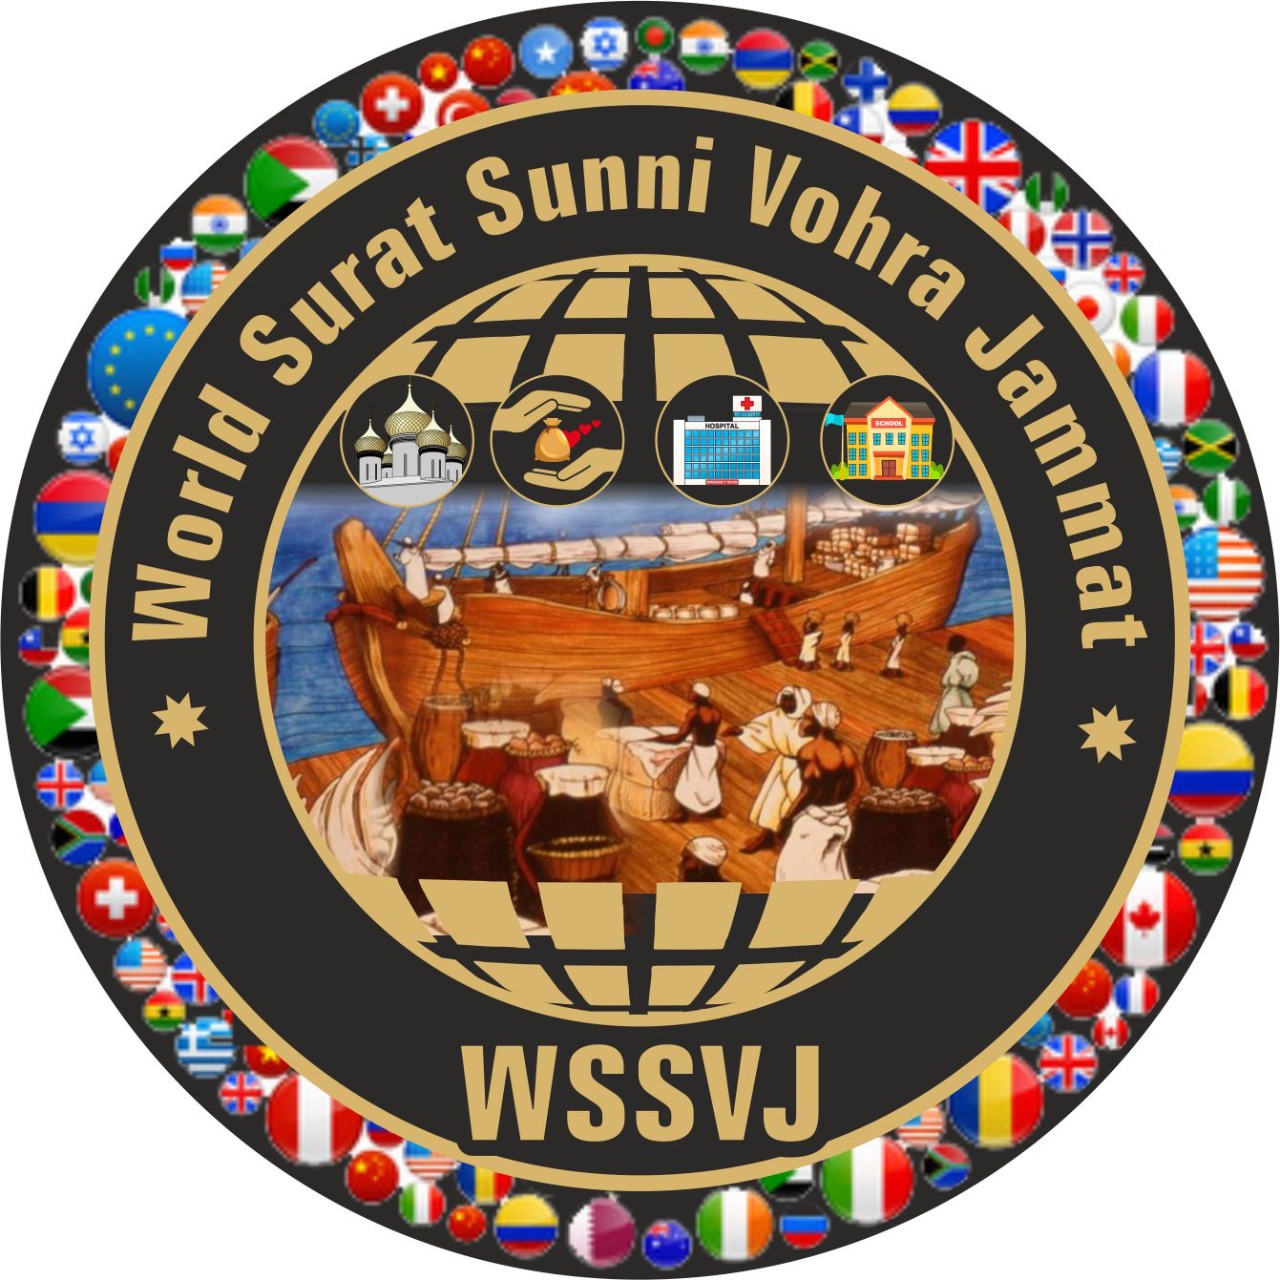 The Young Surti Sunni Vohra Muslim Welfare Society(ધી યંગ સુરતી સુન્ની વ્હોરા મુસ્લિમ વેલ્ફેર સોસાયટી)